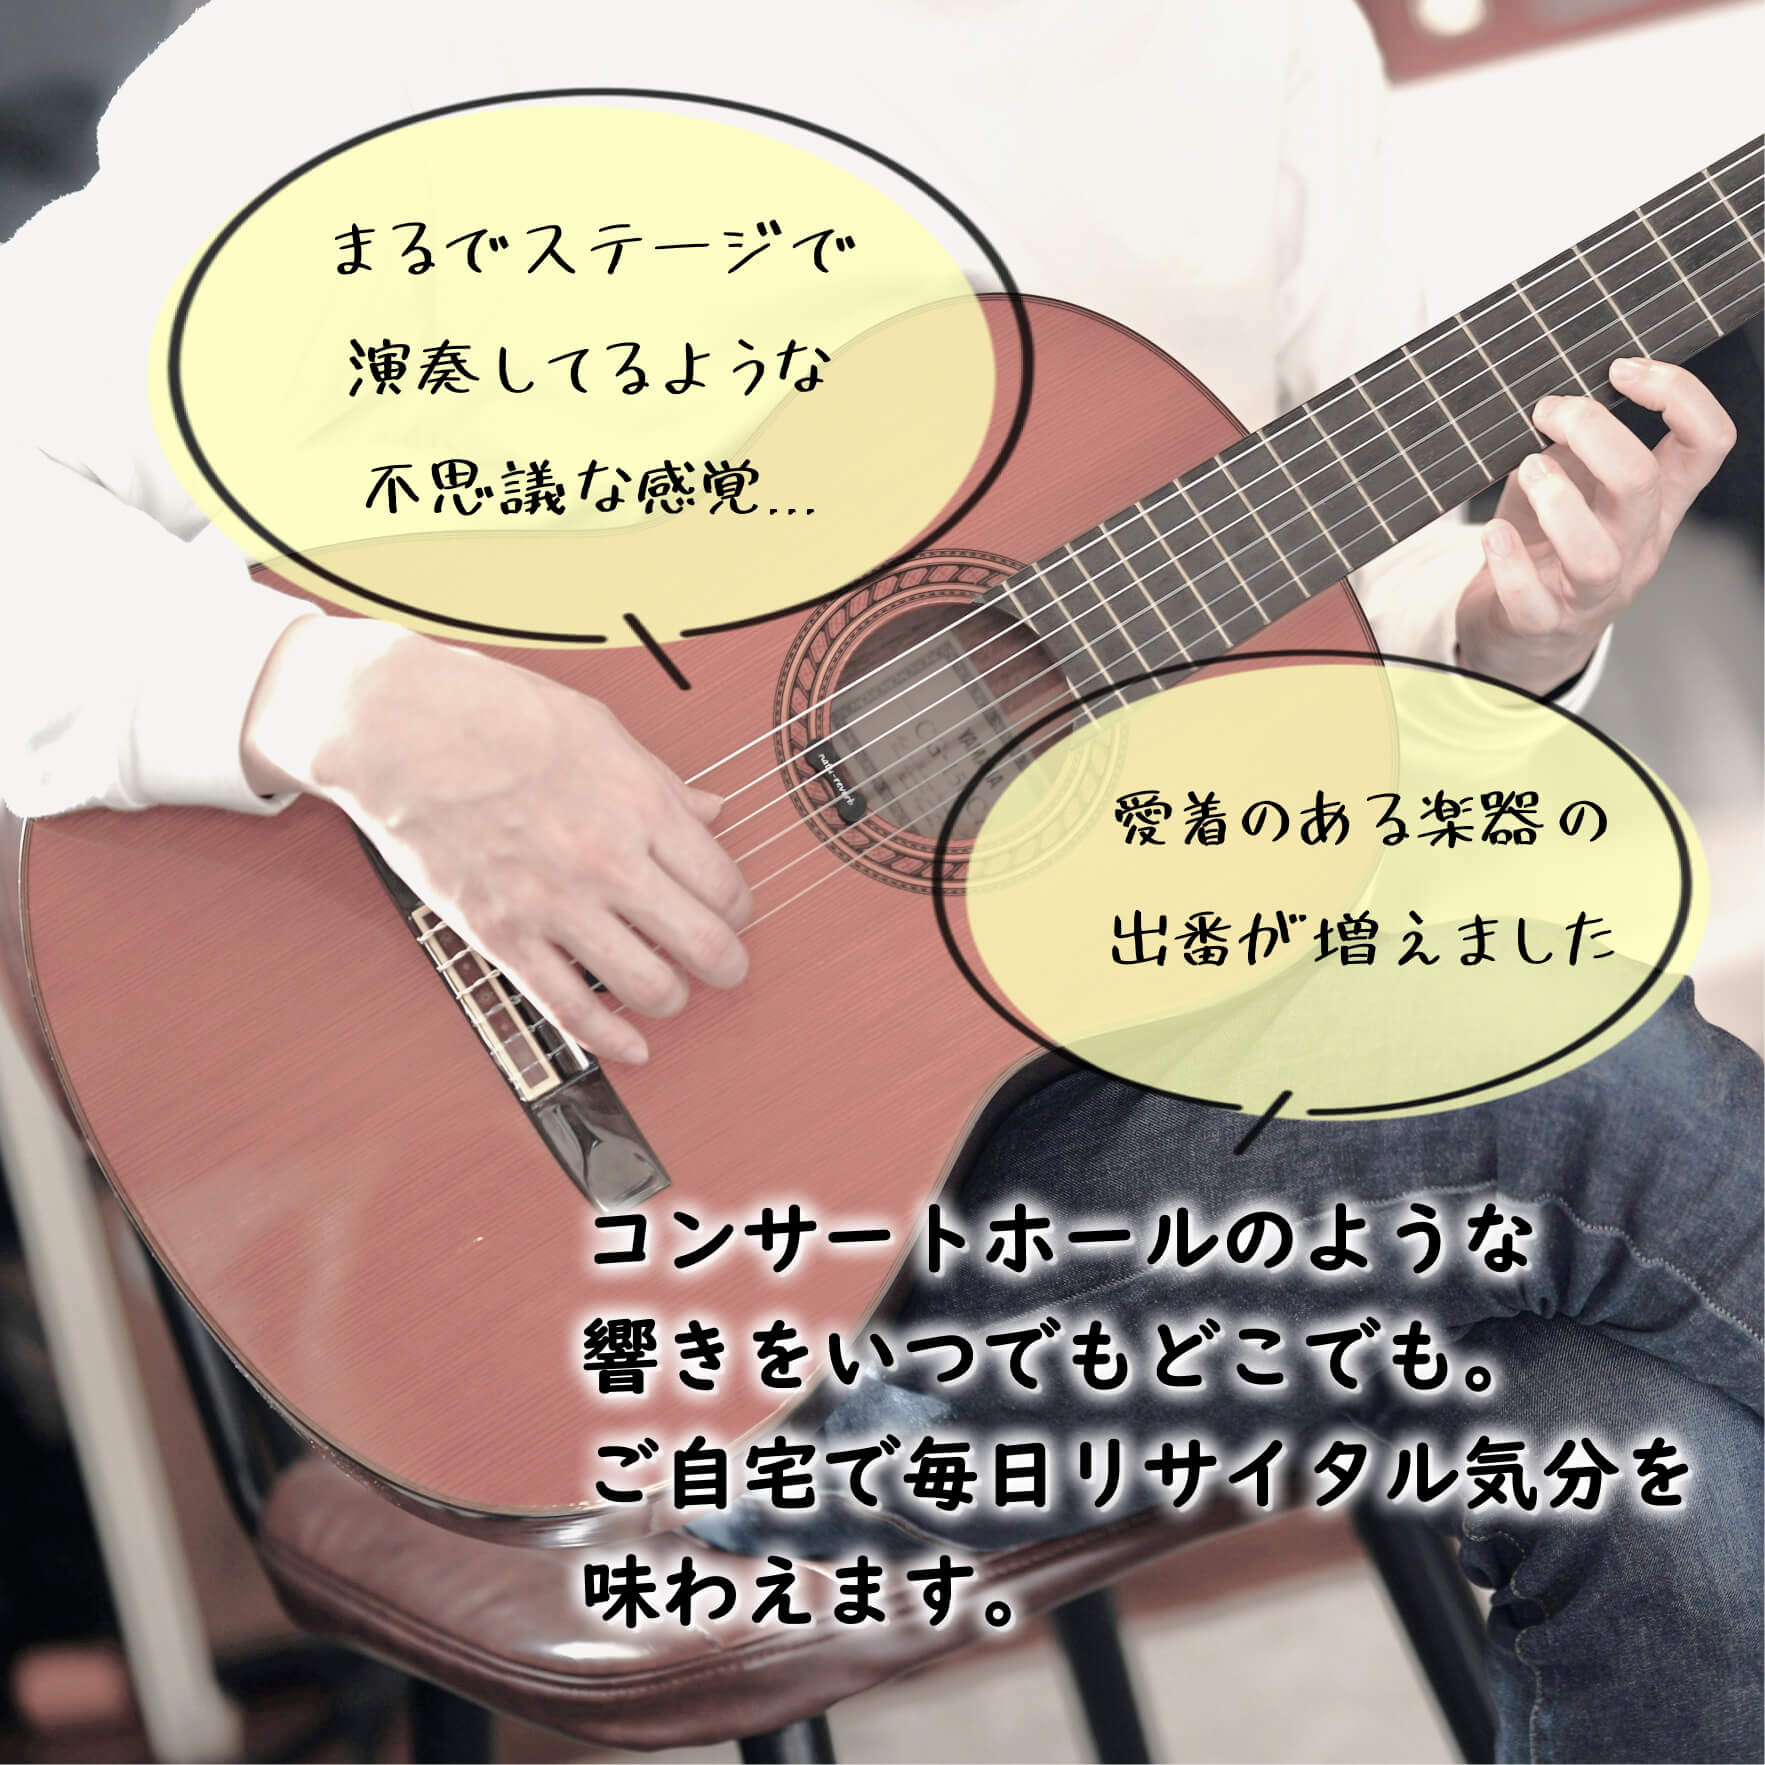 クラシックギター/ガットギター用 natu-reverb CG-1n | 生音の響きを 